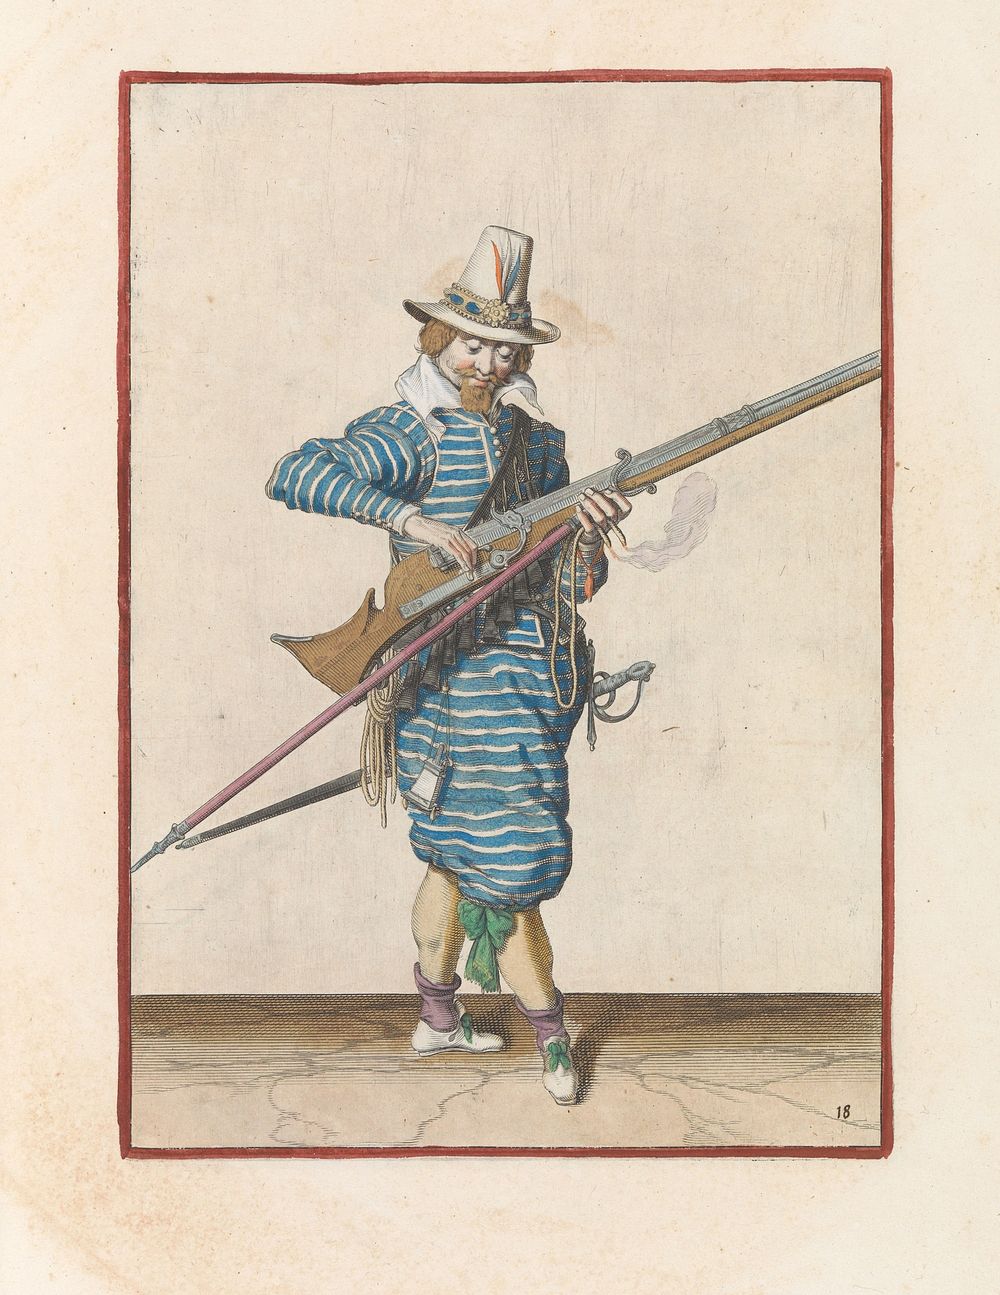 Soldaat die de pan van zijn musket sluit (c. 1597 - 1607) by Jacques de Gheyn II and Jacques de Gheyn II